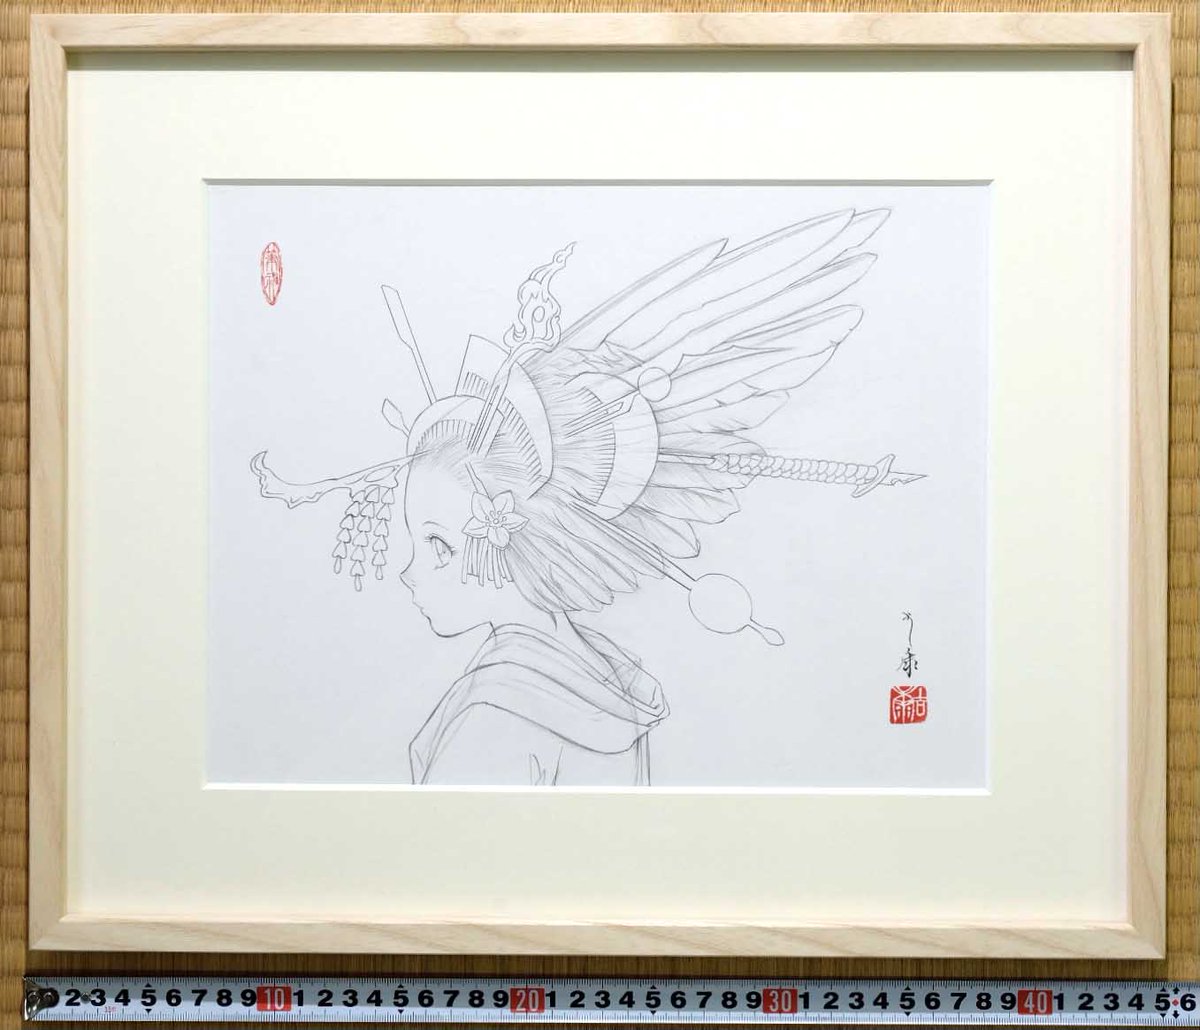 BOOTHに商品を追加しました。もしご興味のある方いらっしゃいましたら、どうぞ宜しくお願いします :)

絵画「花簪」のための下絵 鉛筆線画直筆素描 オリジナル1点 | TAMURA Yoshiyasu https://t.co/RM5sFmKa4d #booth_pm 